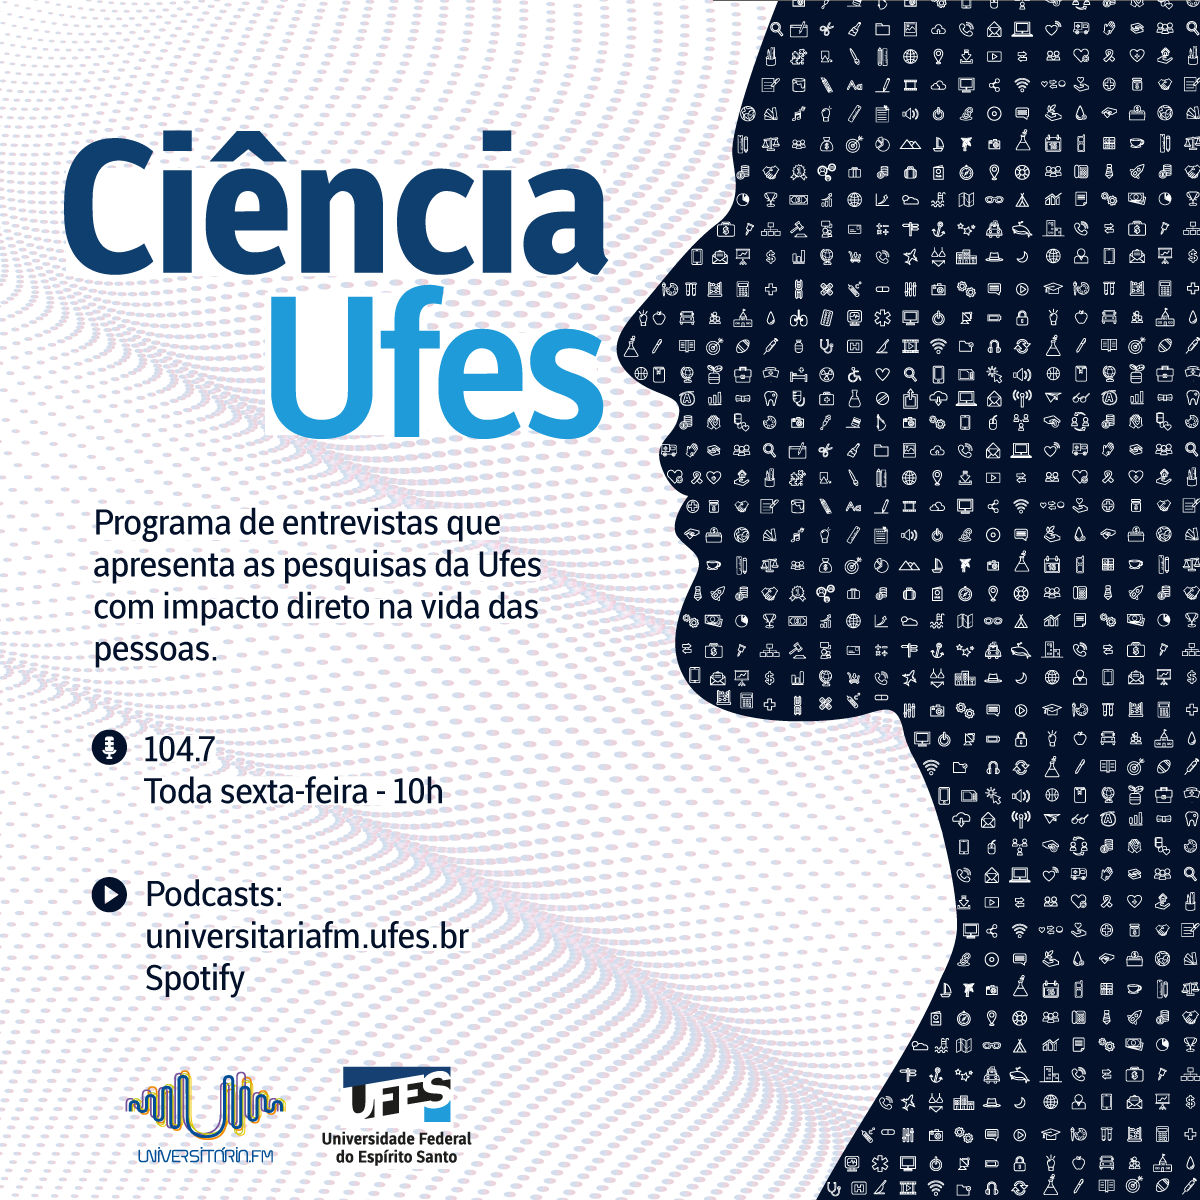 Logomarca do programa Ciência Ufes. A silhueta do perfil de uma cabeça em azul e, dentro da imagem, miniaturas que simbolizam várias áreas do conhecimento